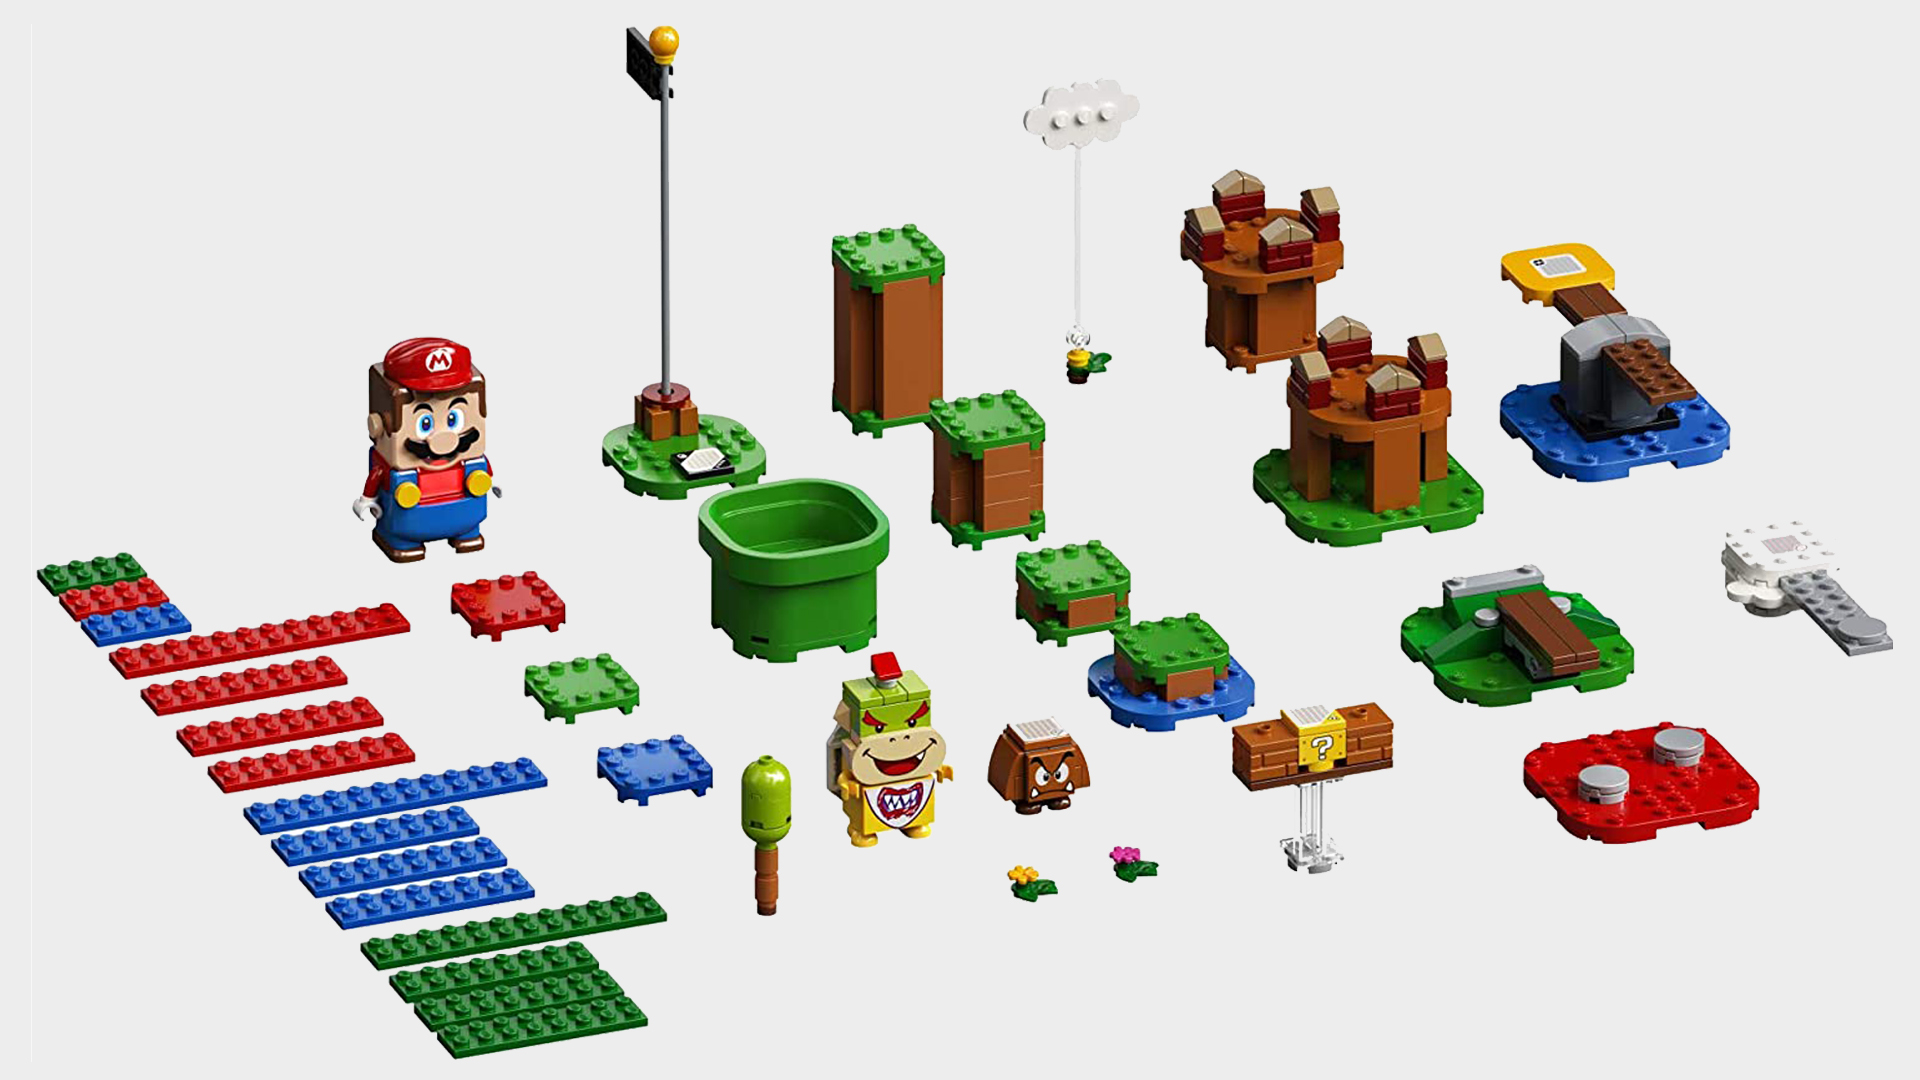 Conjunto inicial LEGO Super Mario